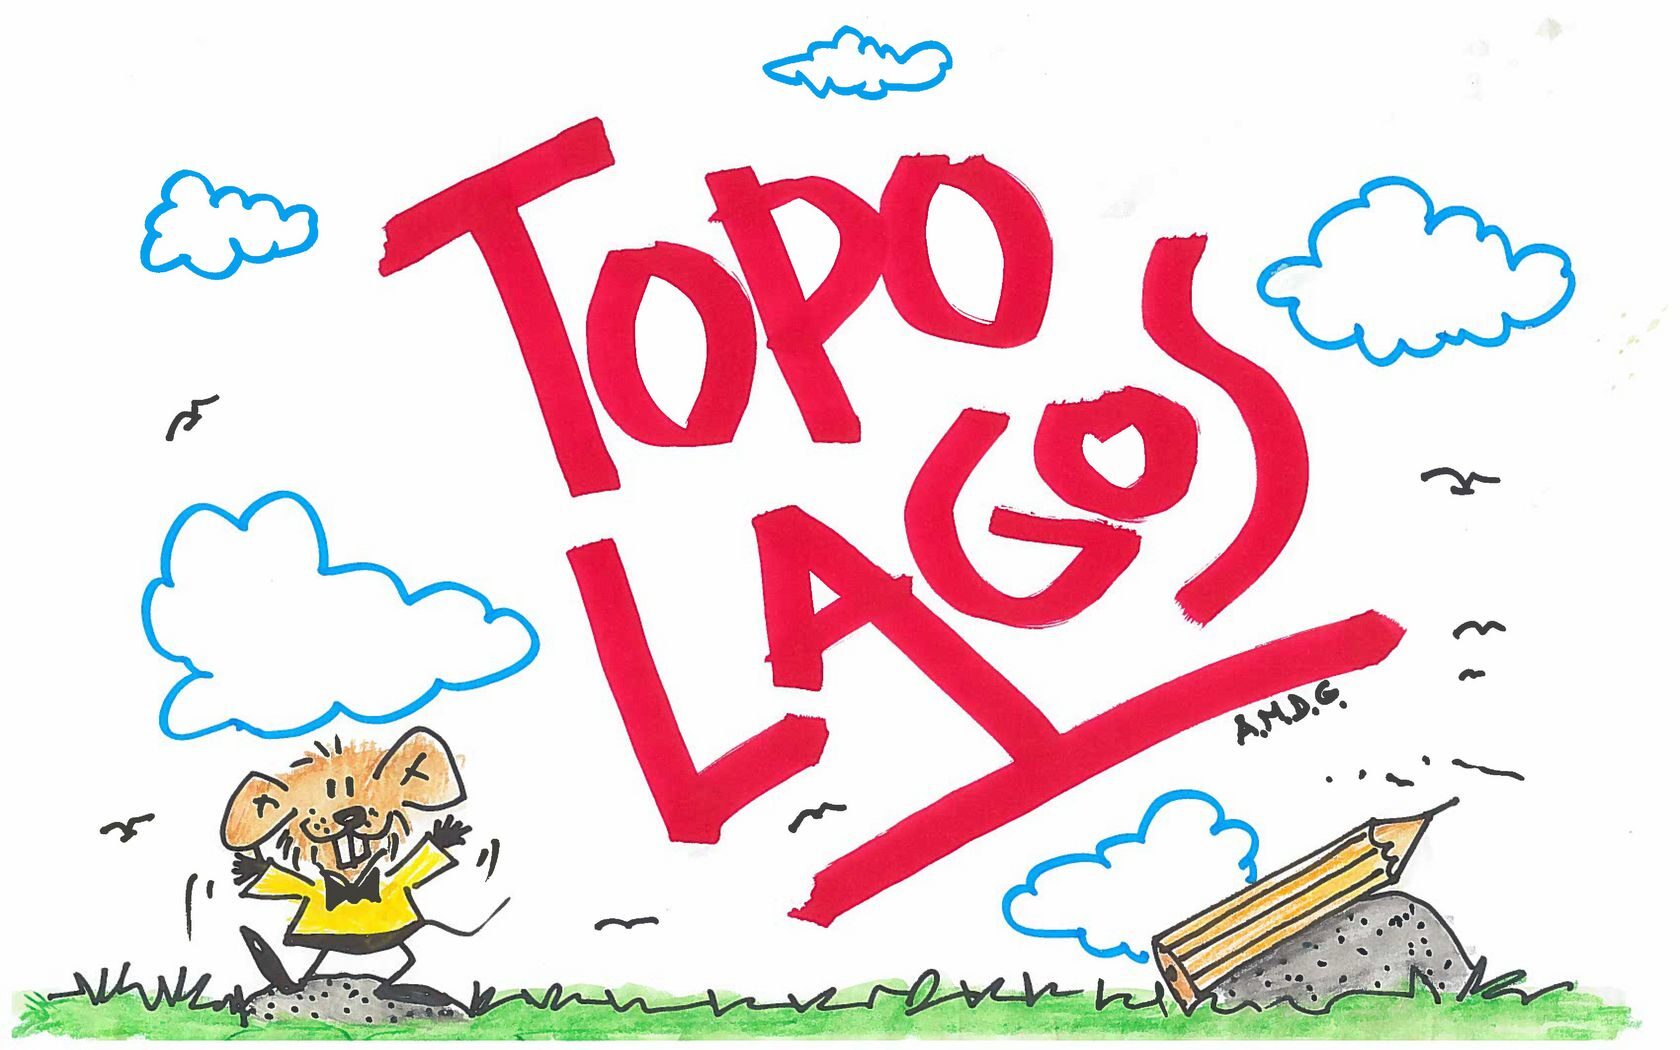 Topo Lagos